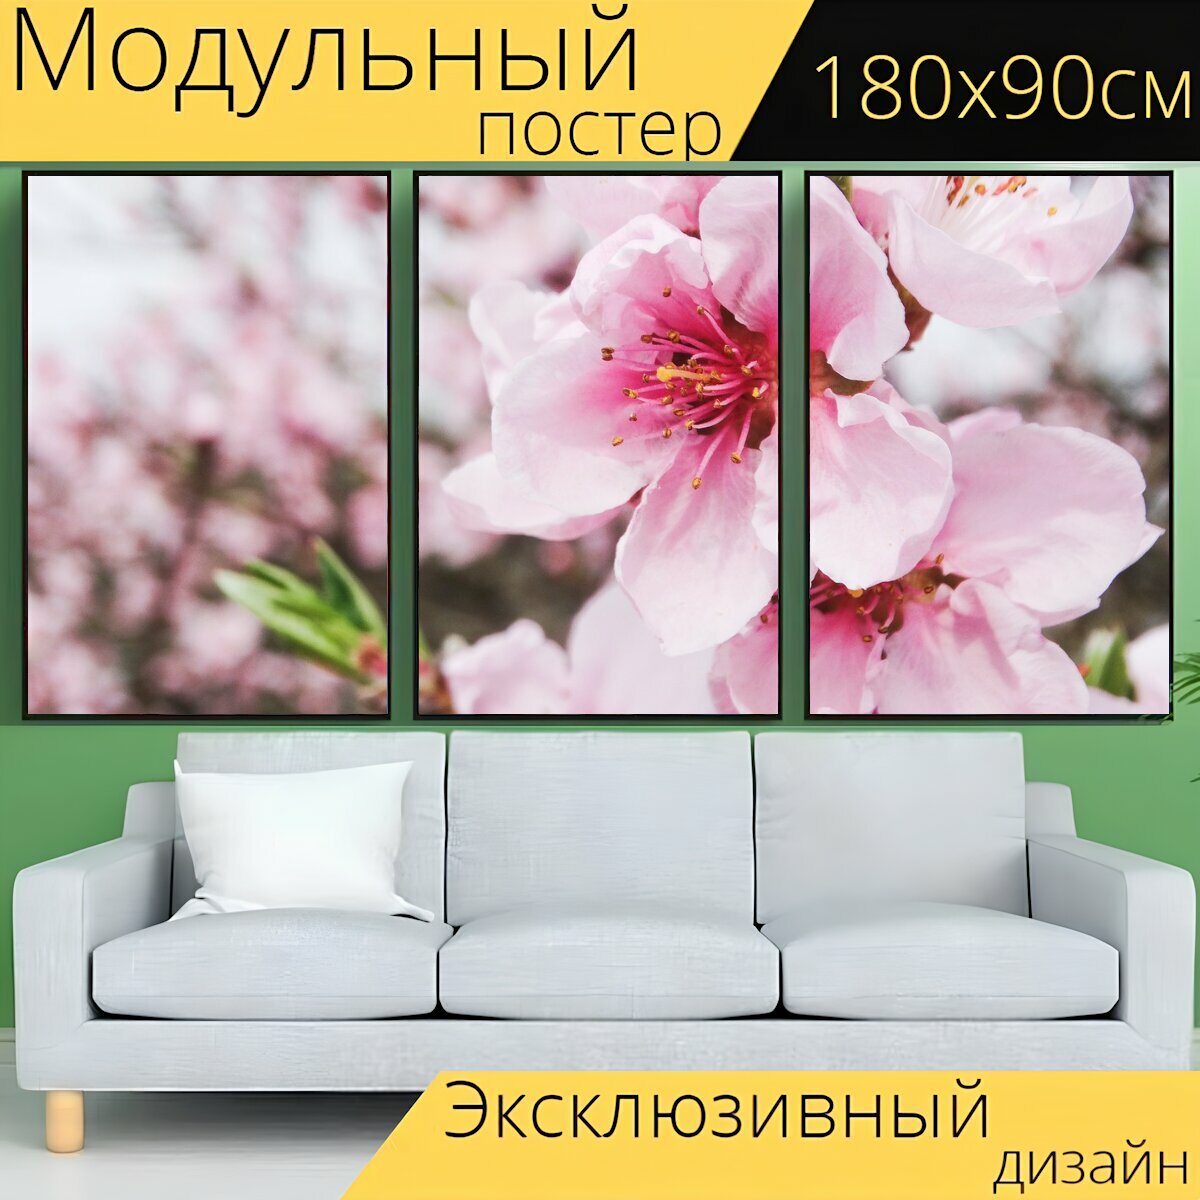 Модульный постер "Цветок, дерево, завод" 180 x 90 см. для интерьера